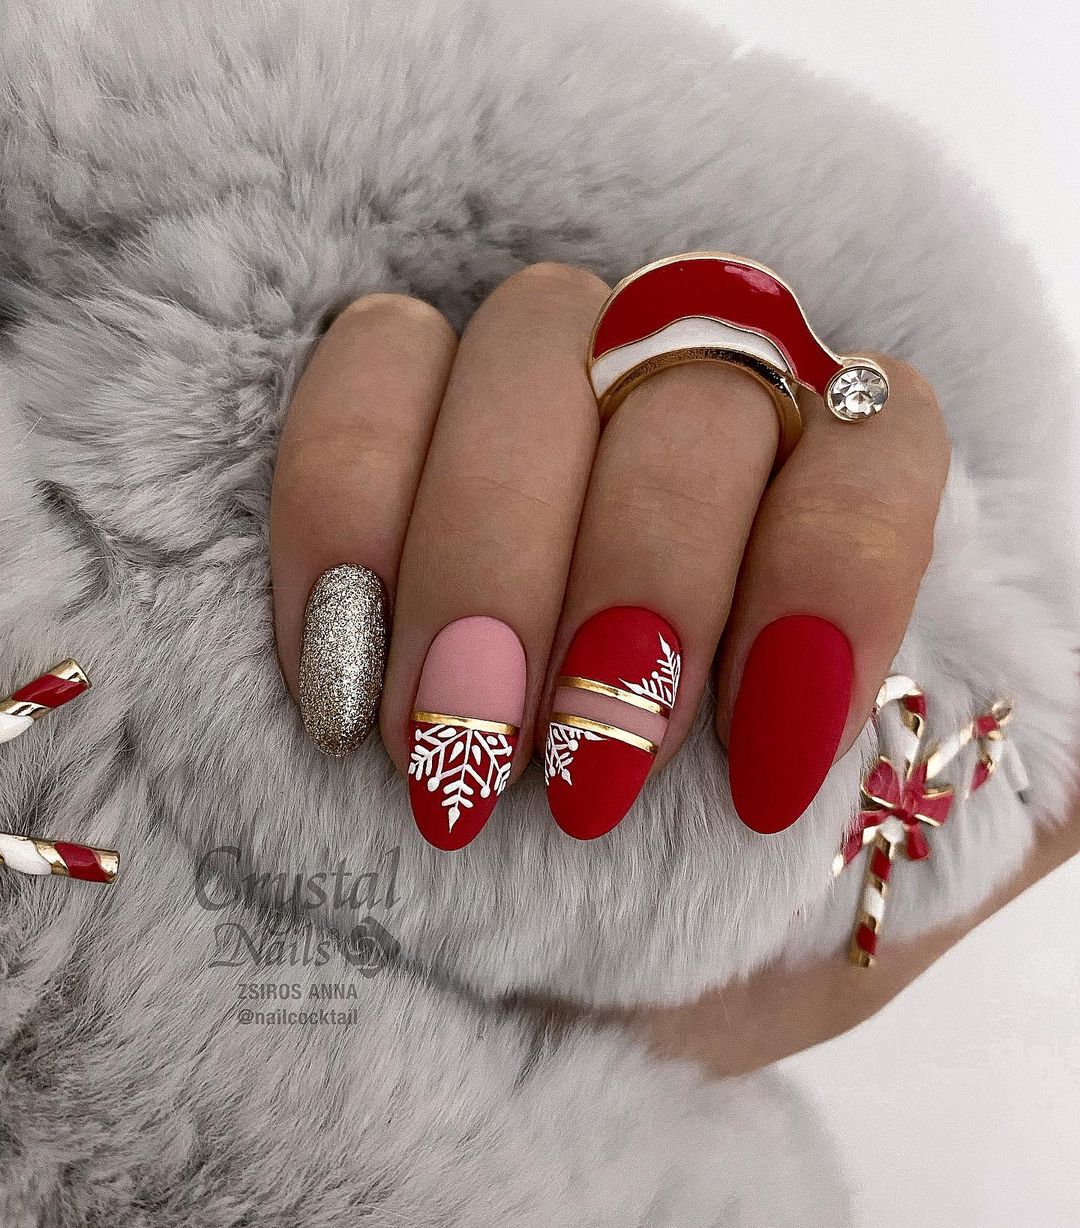 Rode matte nagels met sneeuwvlokken en zilverkleurig ontwerp